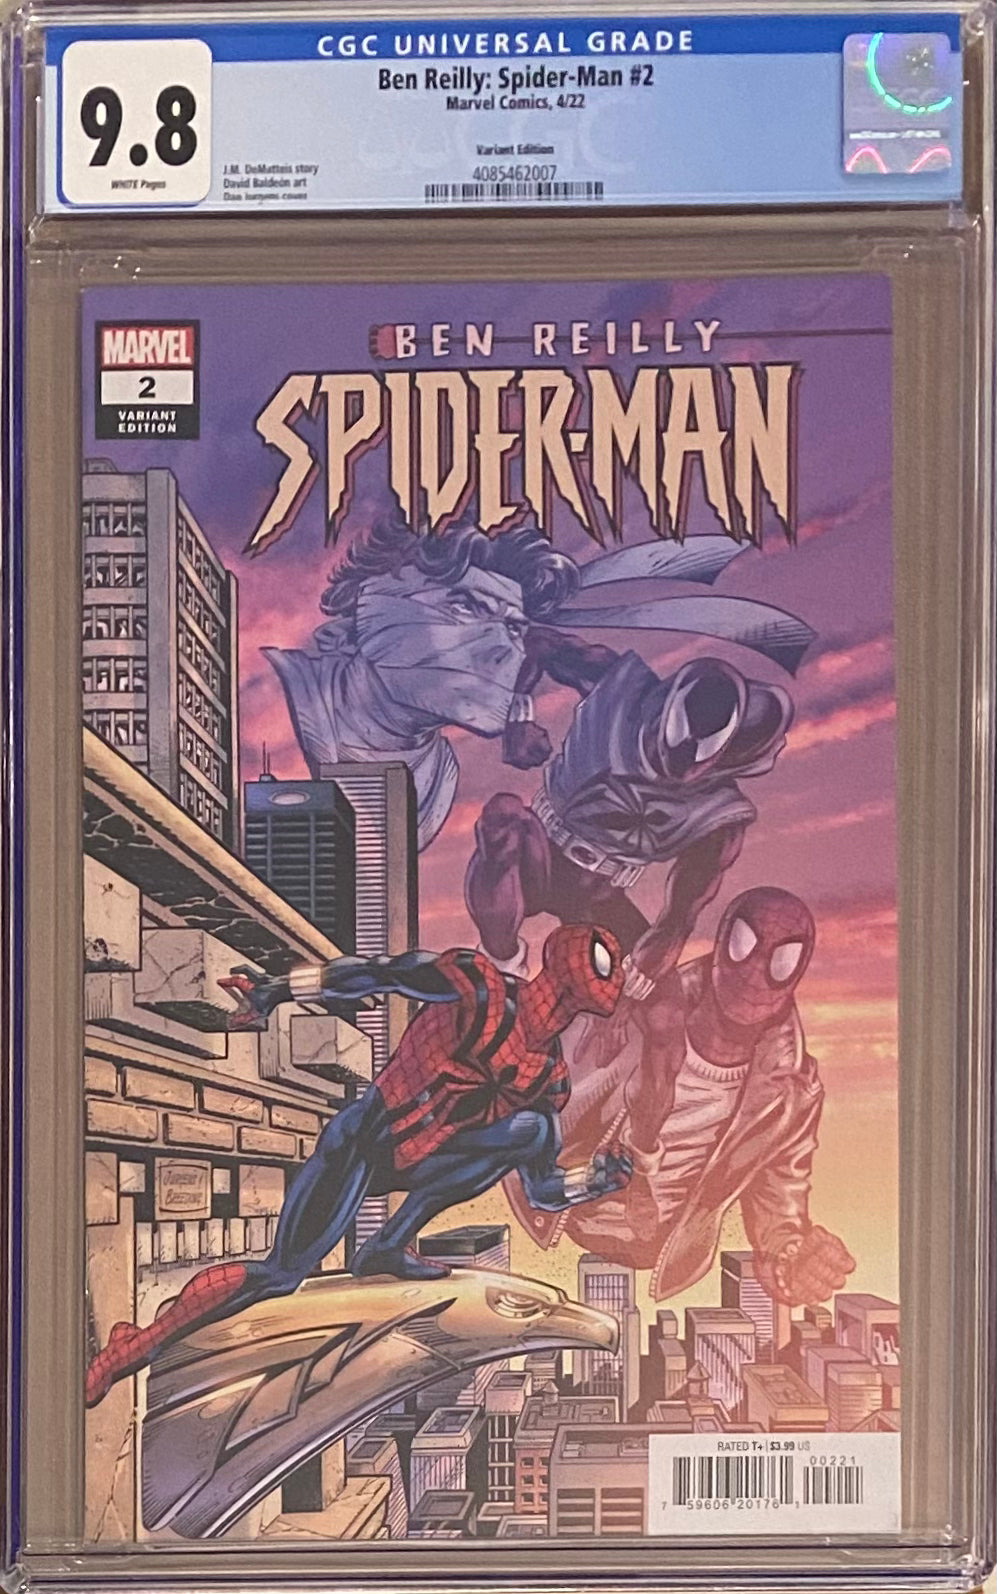 Ben Reilly: Spider-Man #2 Variant CGC 9.8